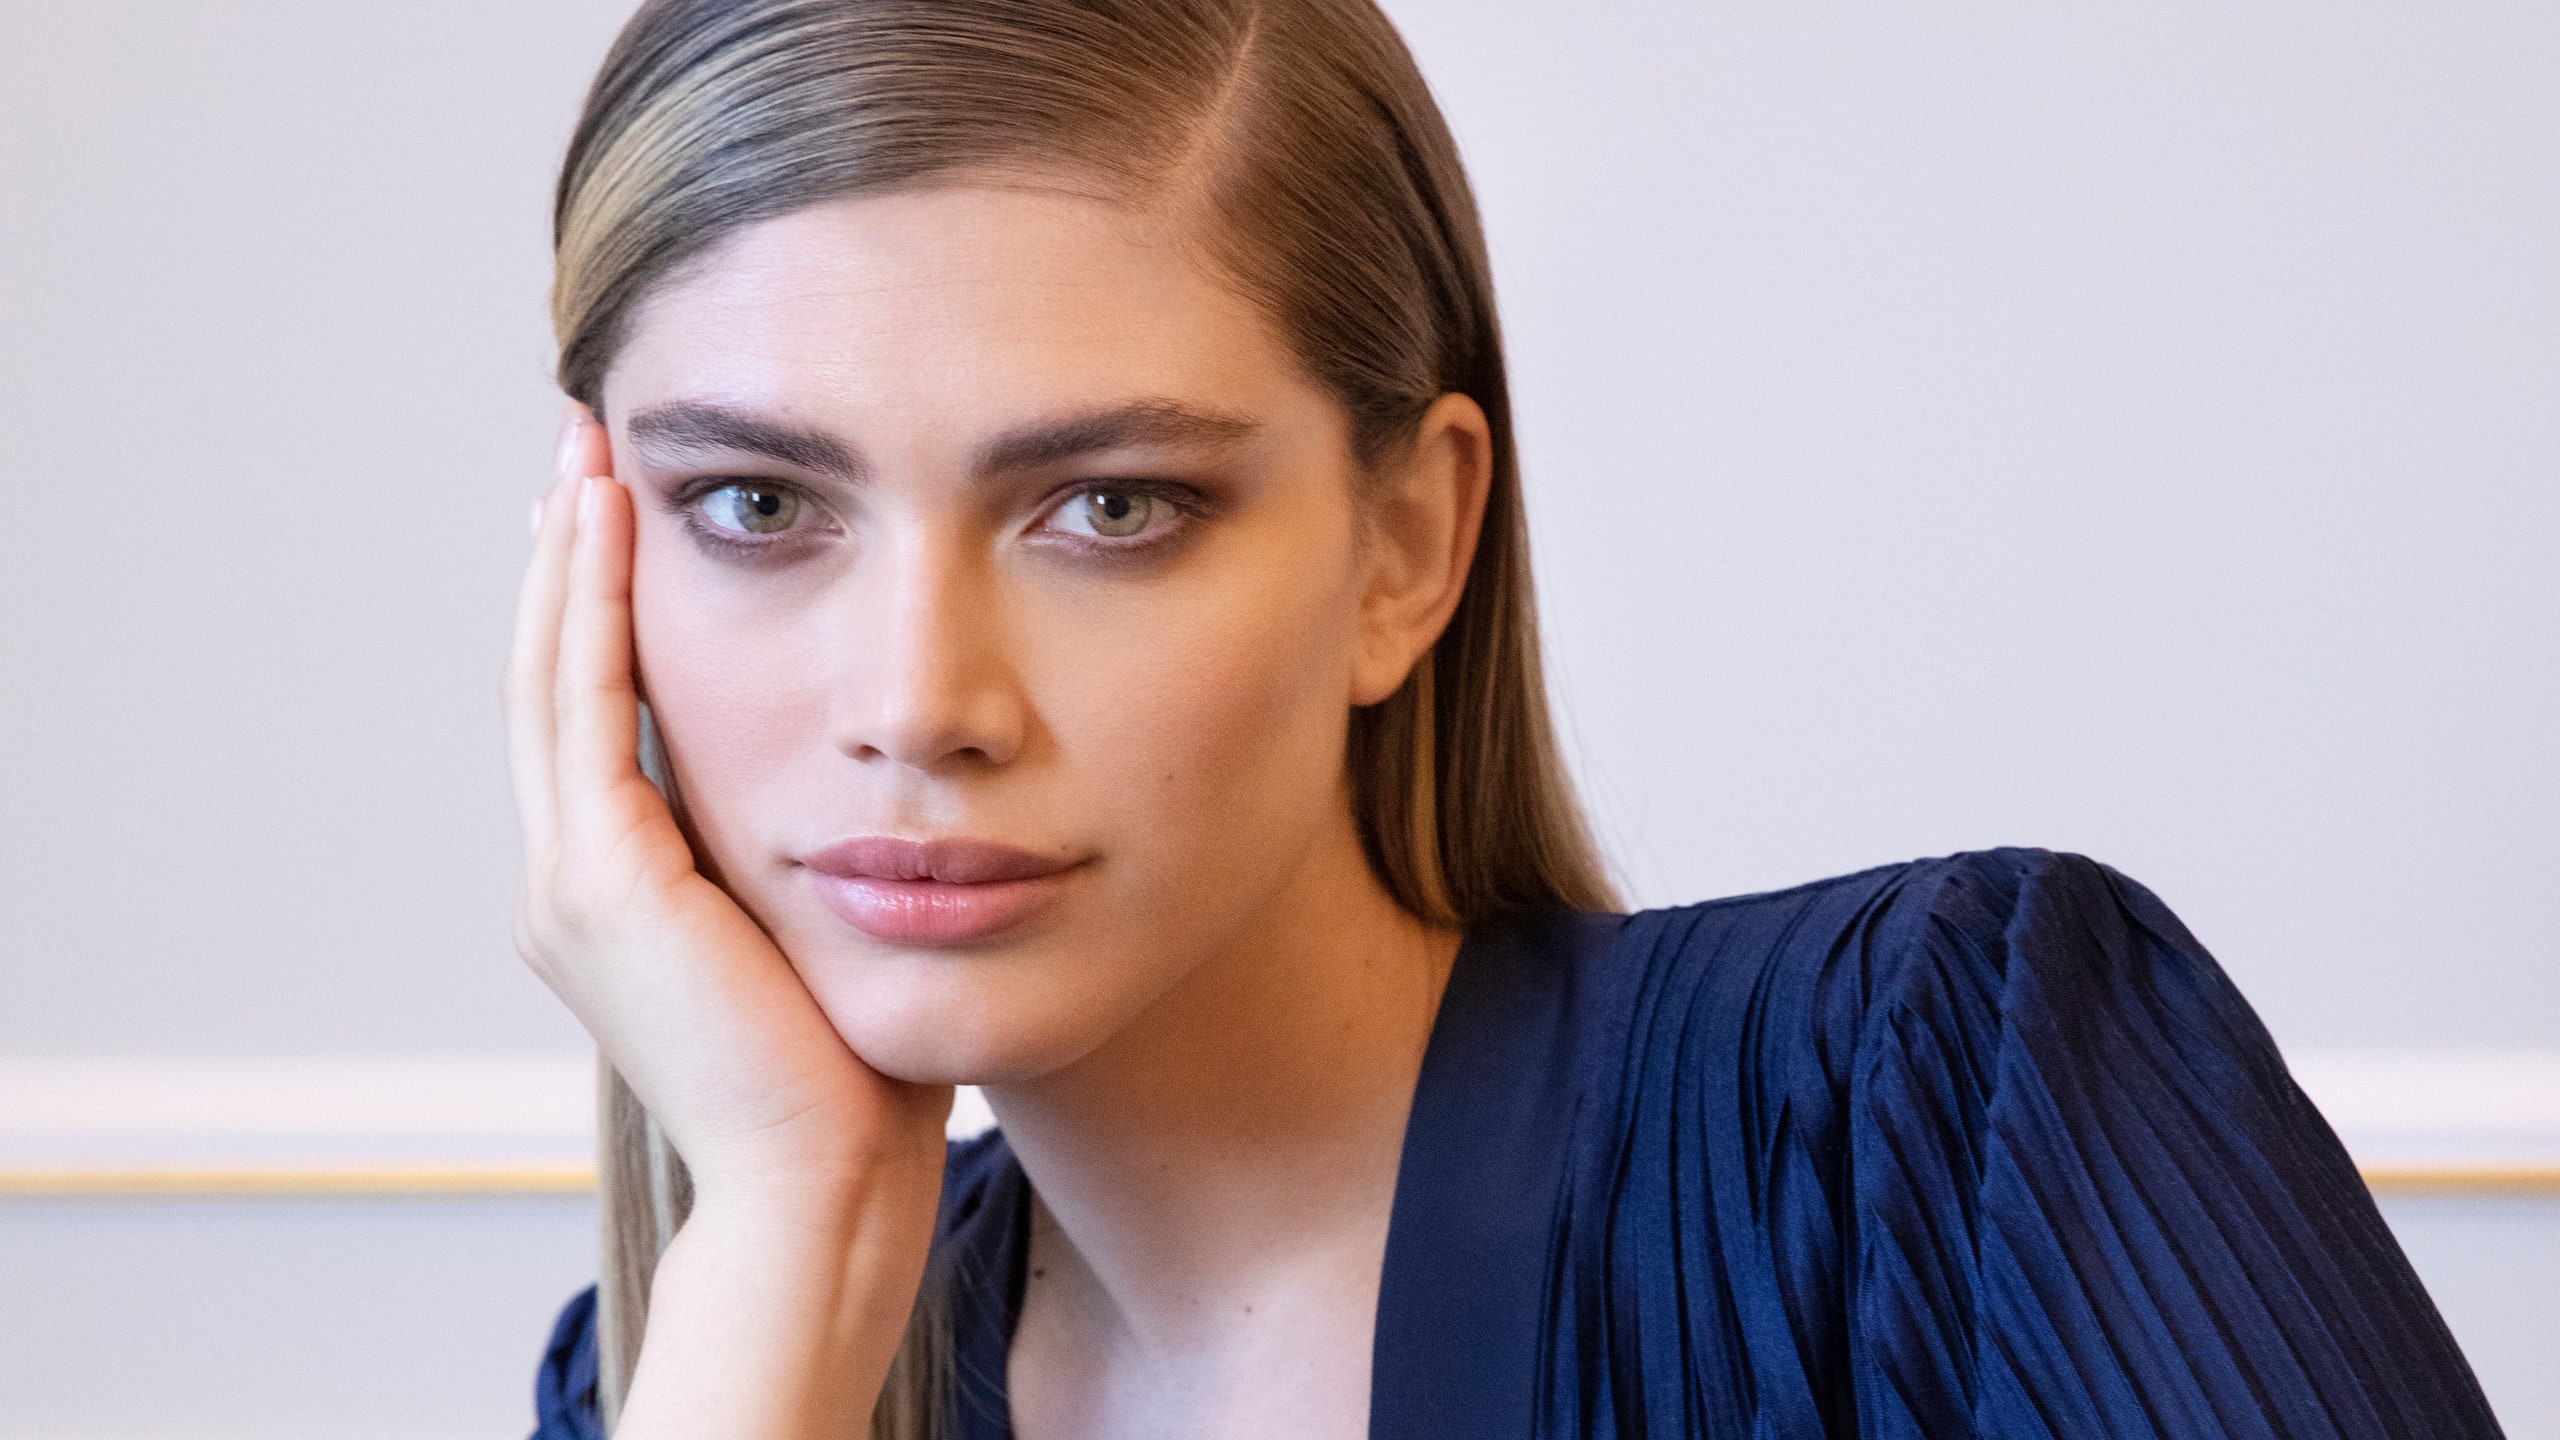 Модель и активистка Валентина Сампайо стала новым лицом бренда Armani beauty